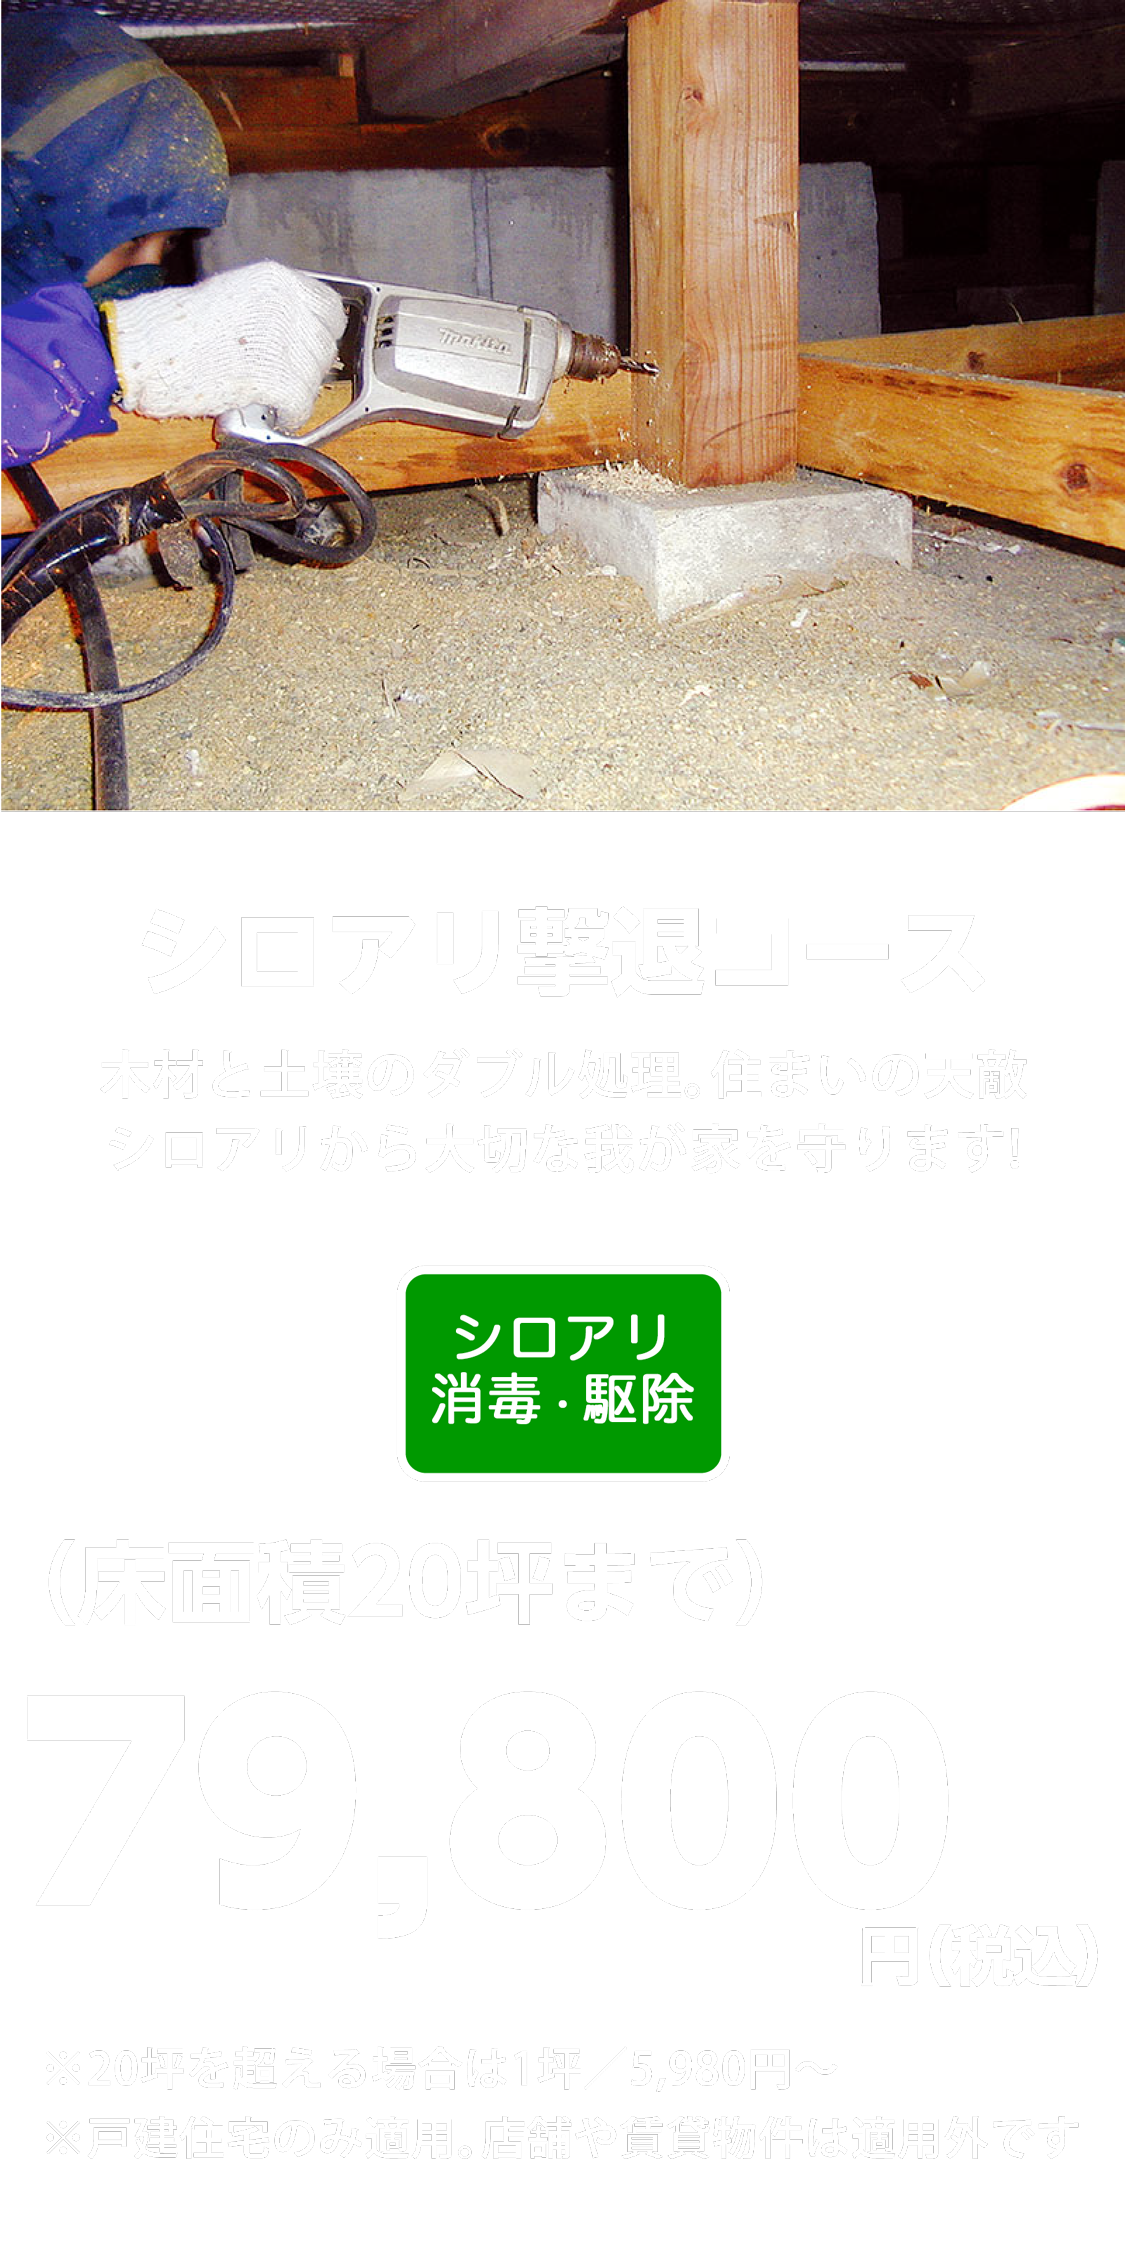 シロアリ撃退コース 79,800円(税込)